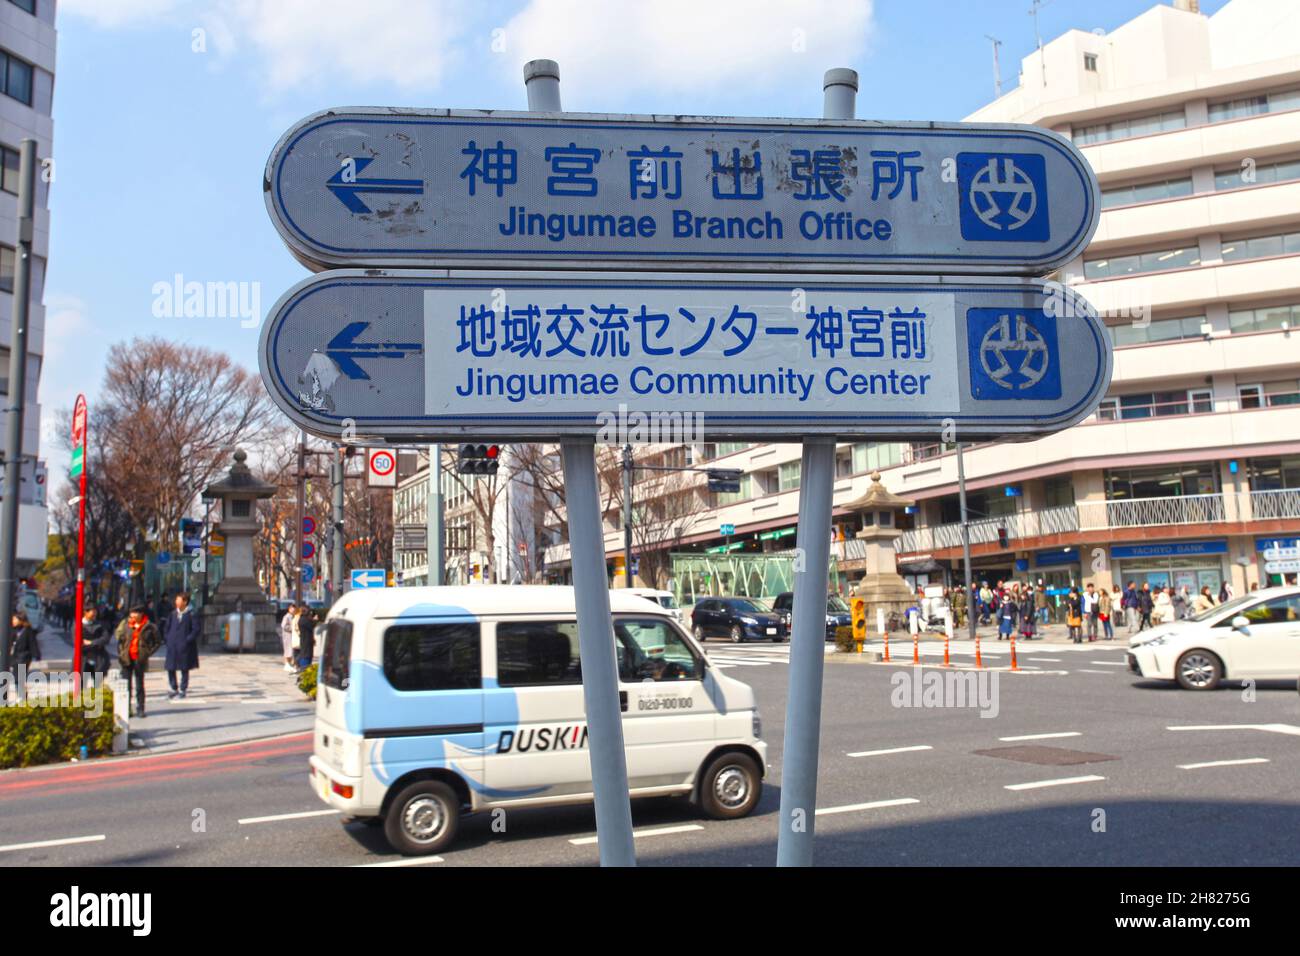 Wegweiser zum Jingumae-Zweigbüro und zum Jingumae-Gemeindezentrum in Harajuku, Tokio. Stockfoto